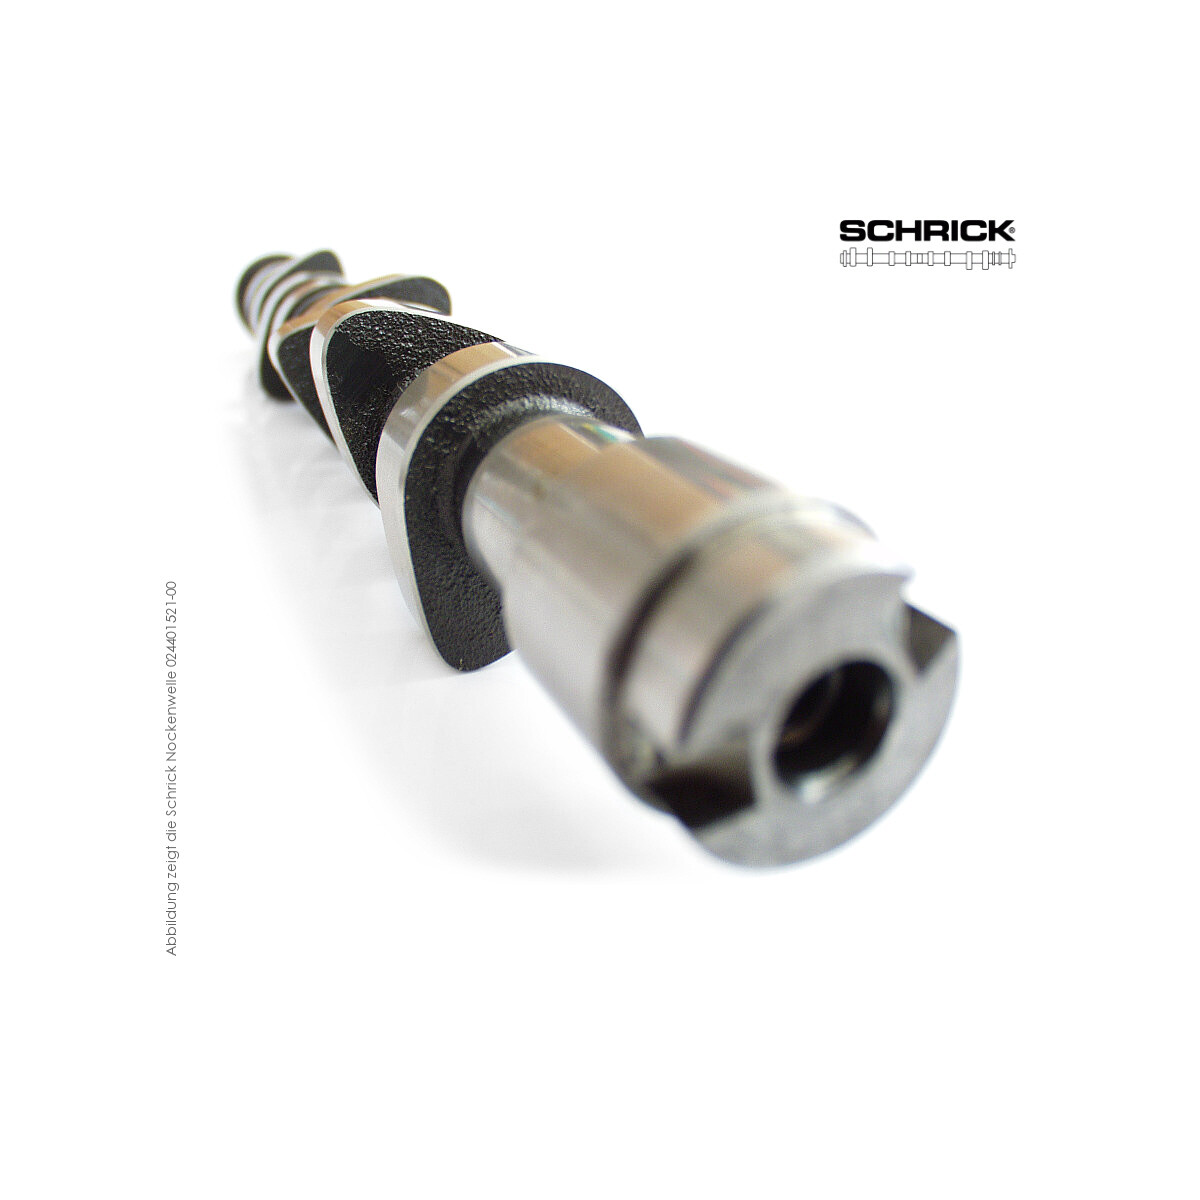 Schrick Nockenwelle für BMW  | 8V 4-Zyl. M10  | 328° / 316° Asynchron (Schrick 000201280-01)